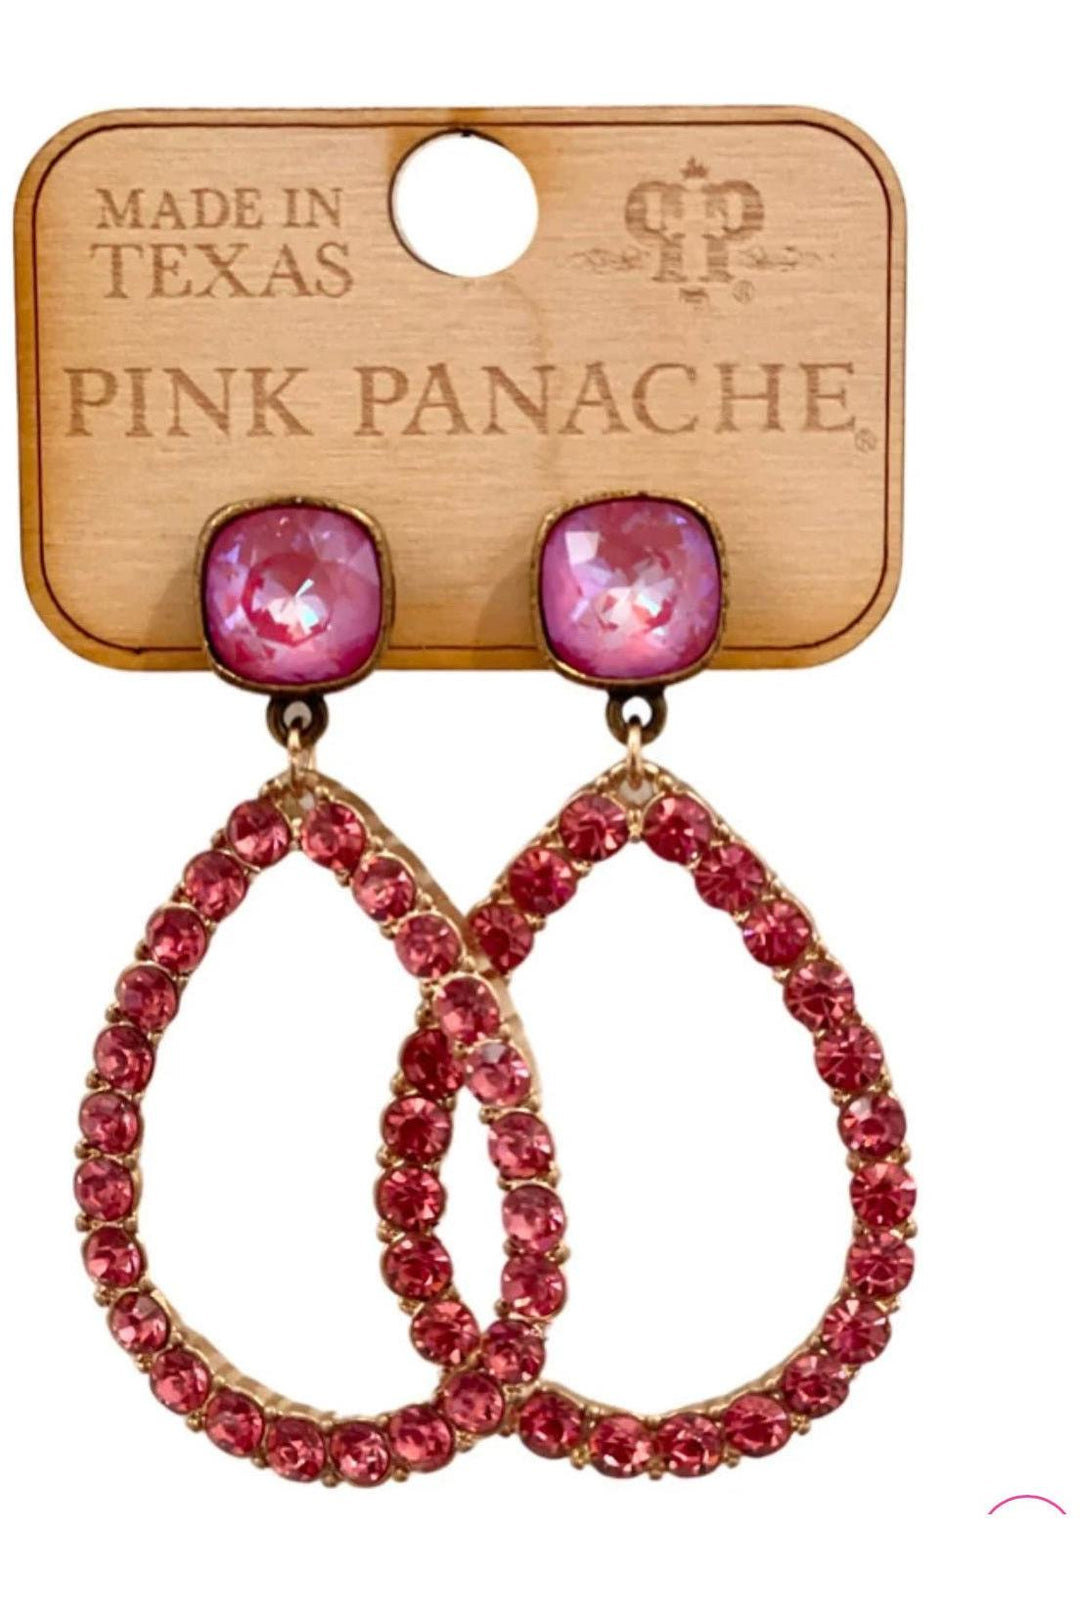 Pink Rhinestone Teardrop Earrings - Vintage Dragonfly